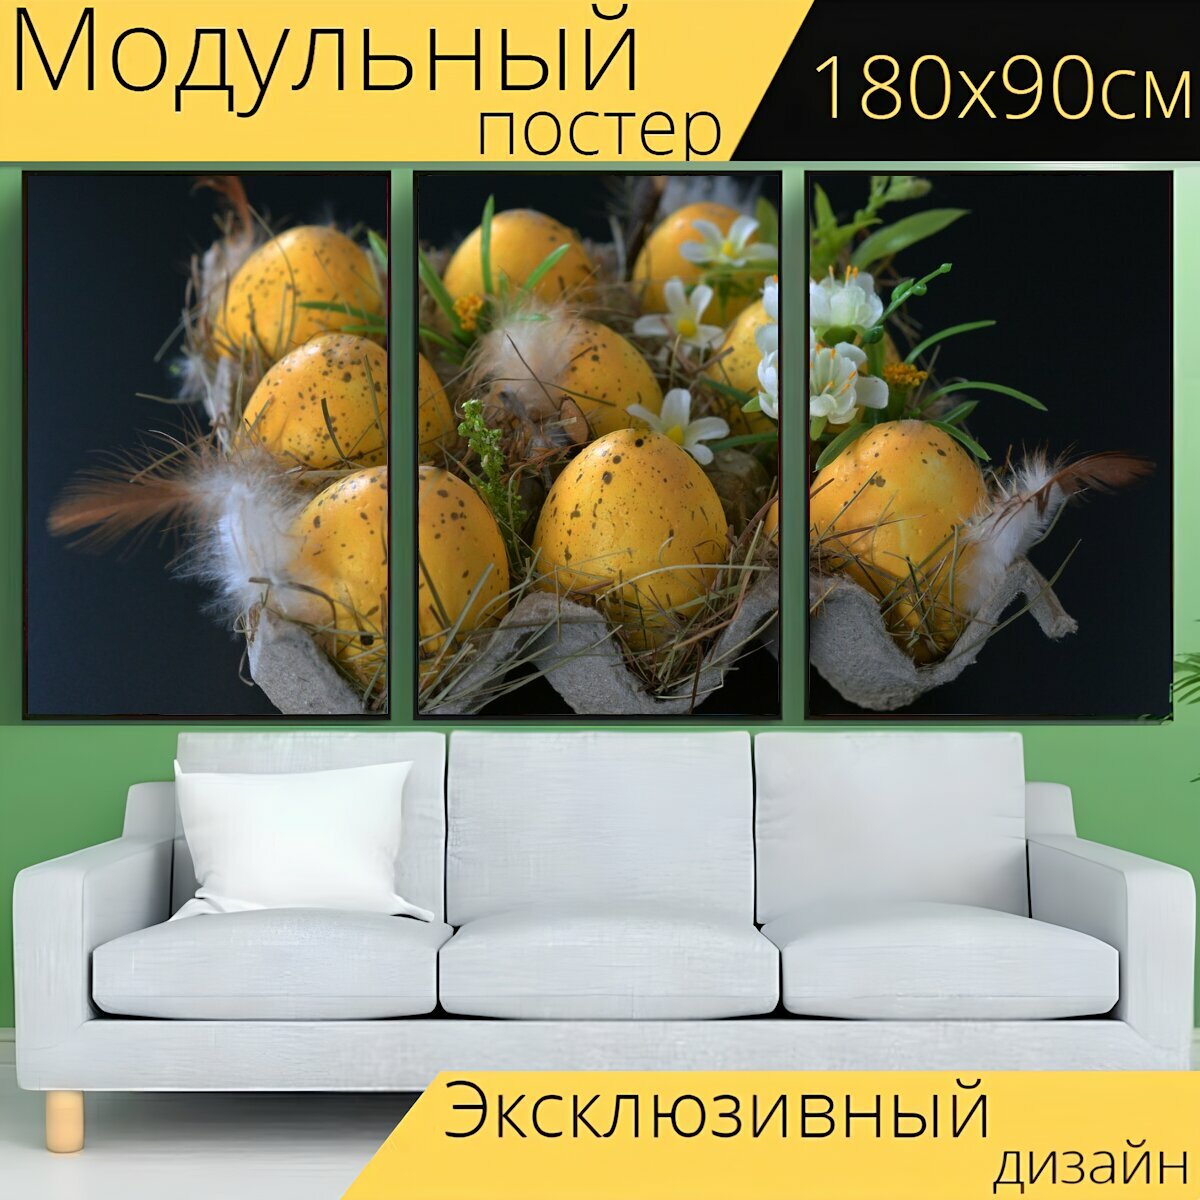 Модульный постер "Пасхальные яйца, пасха нест, пасхальный" 180 x 90 см. для интерьера